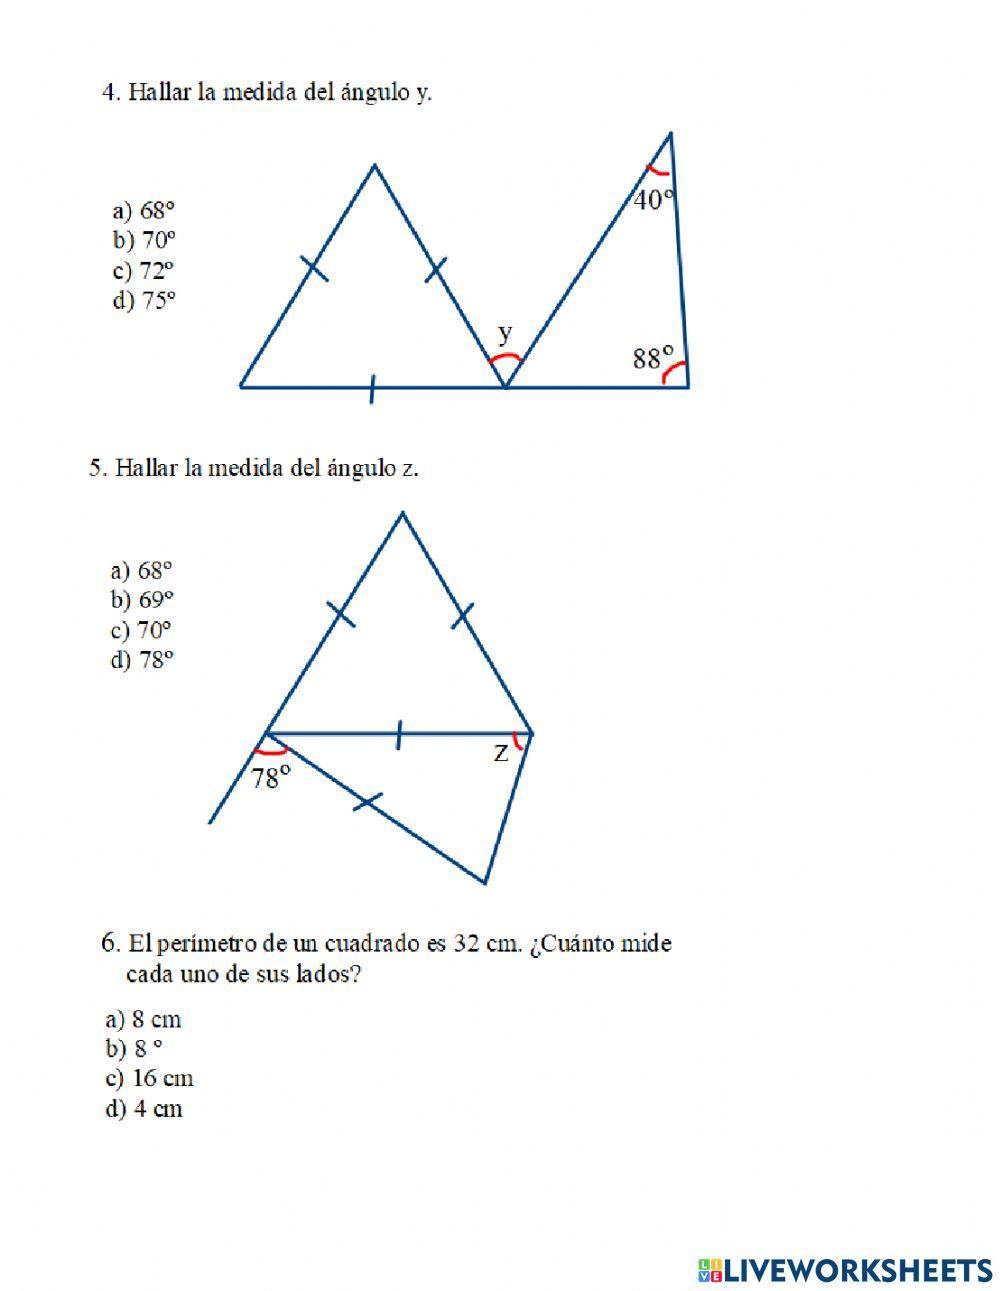 Practica de triángulos y cuadriláteros